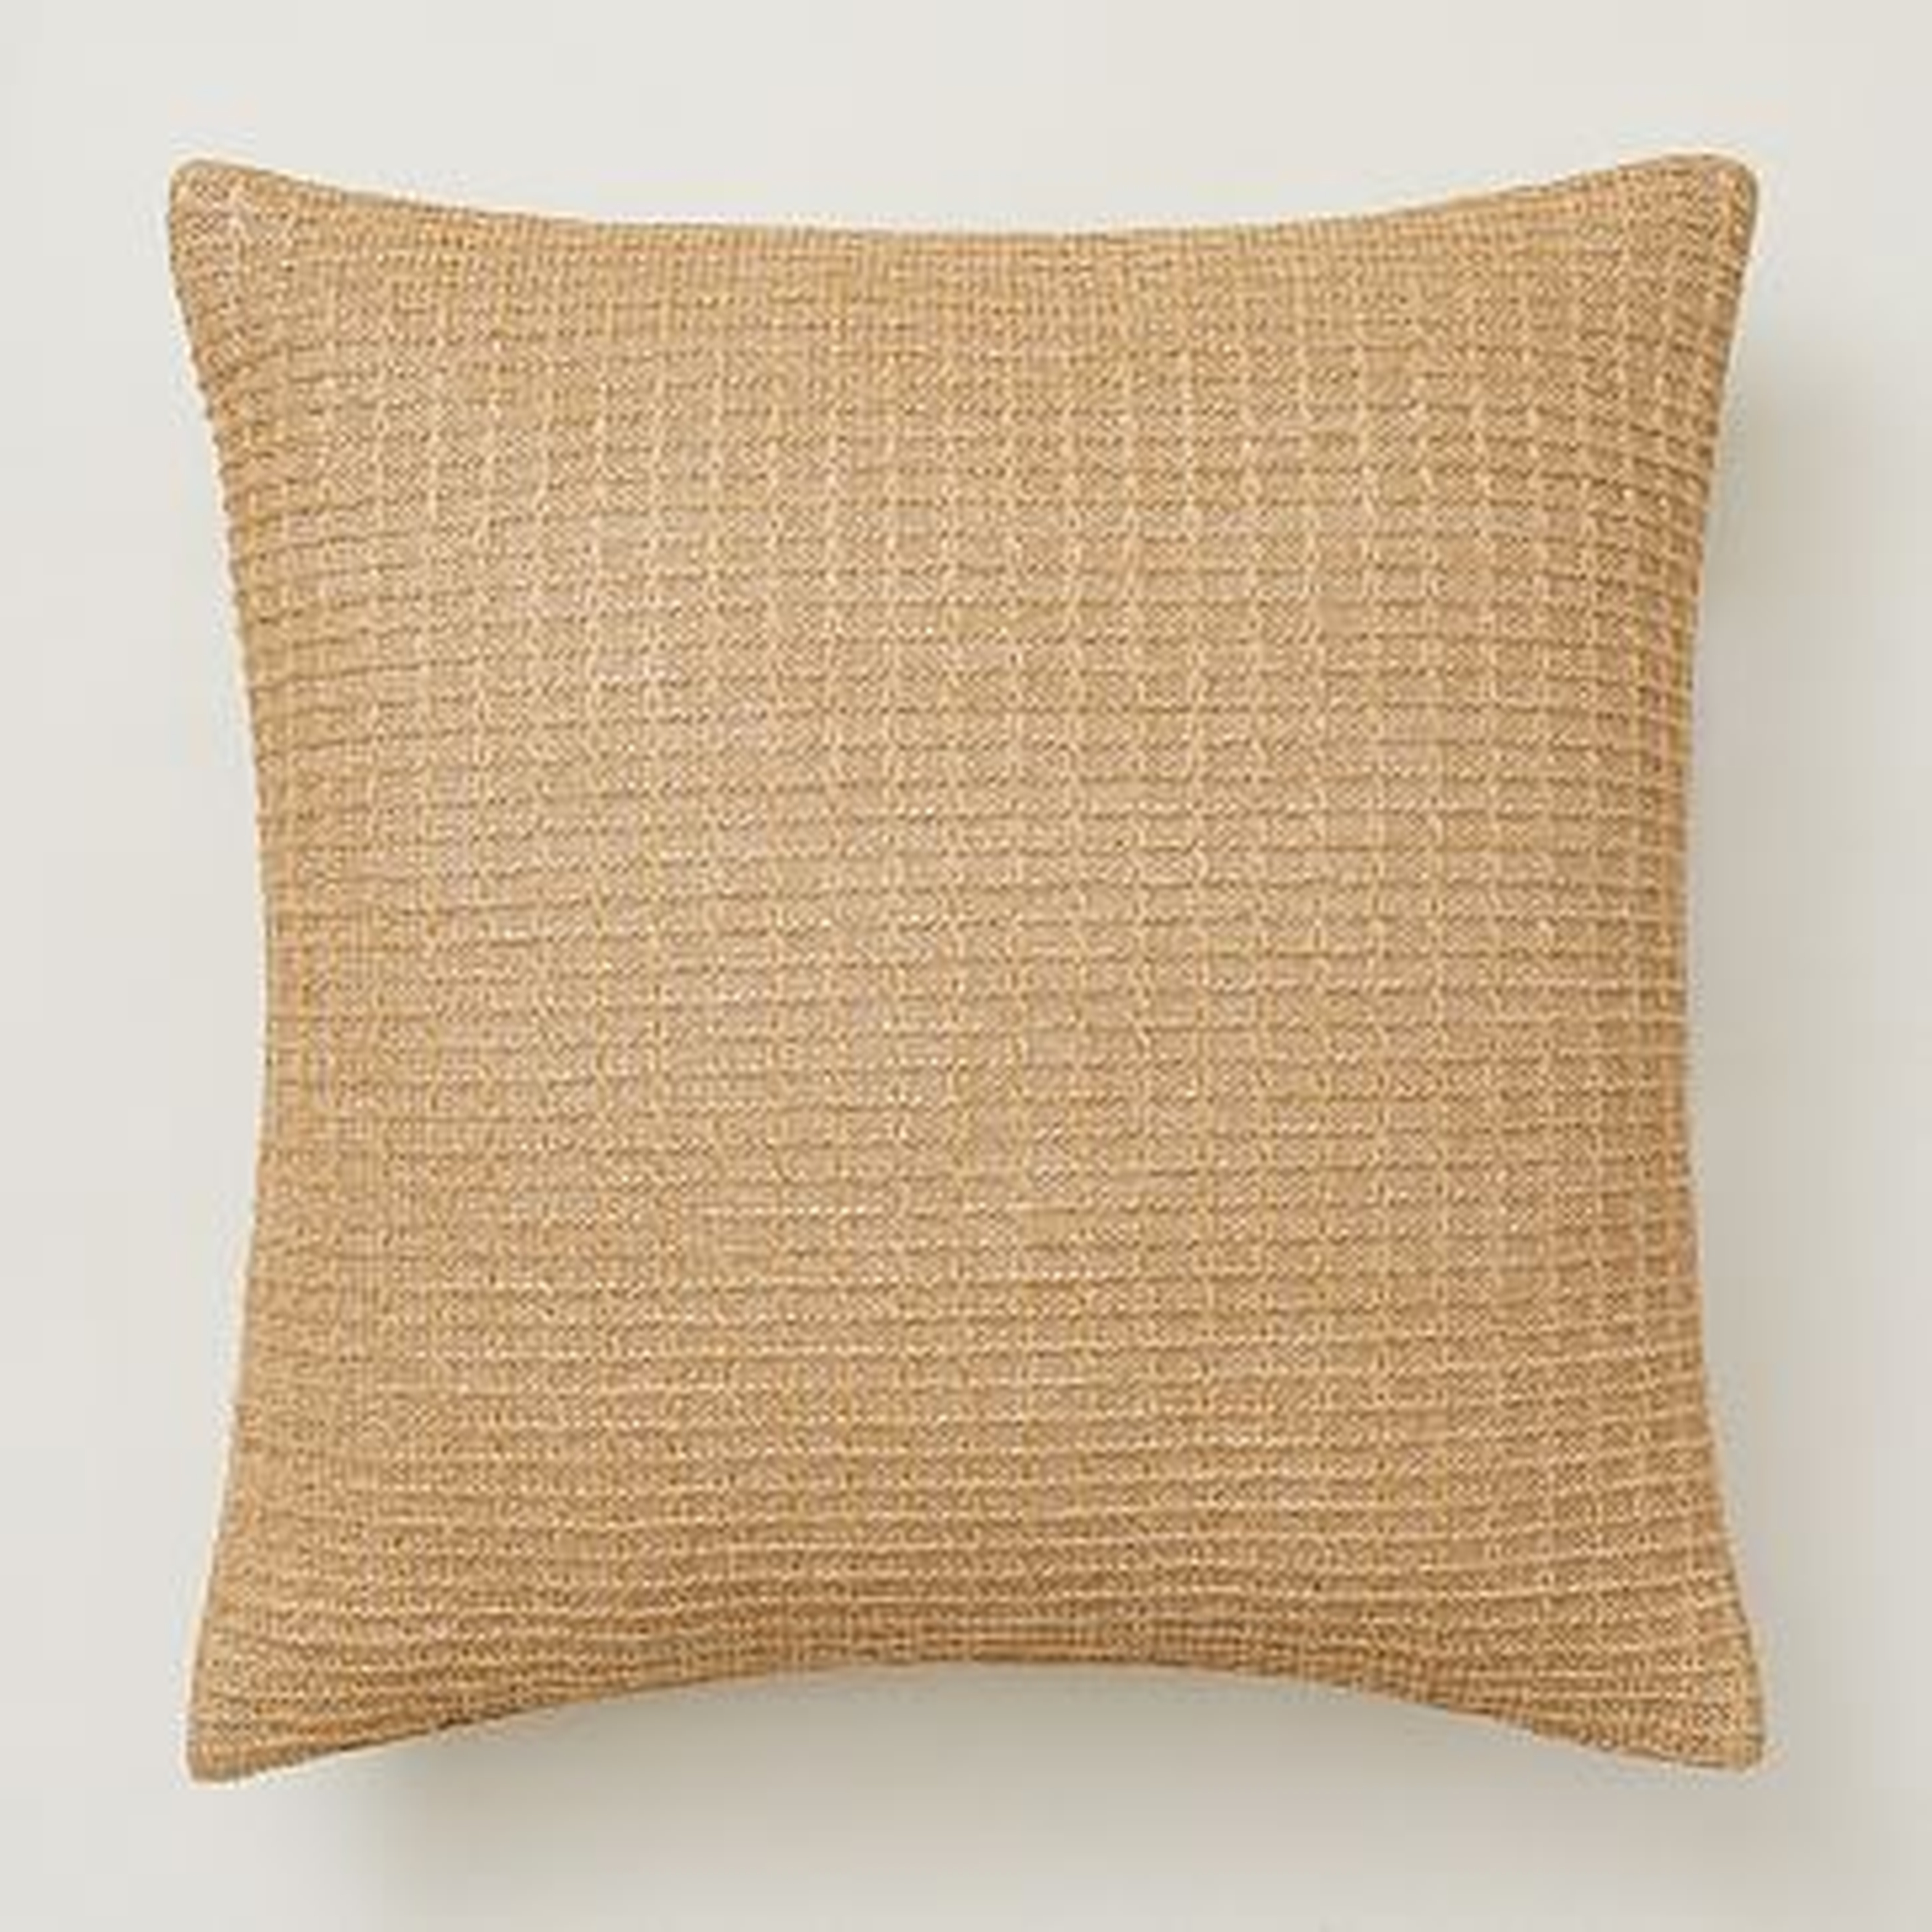 Faux Jute Indoor/Outdoor Pillow, Natural, 24"x24" - West Elm